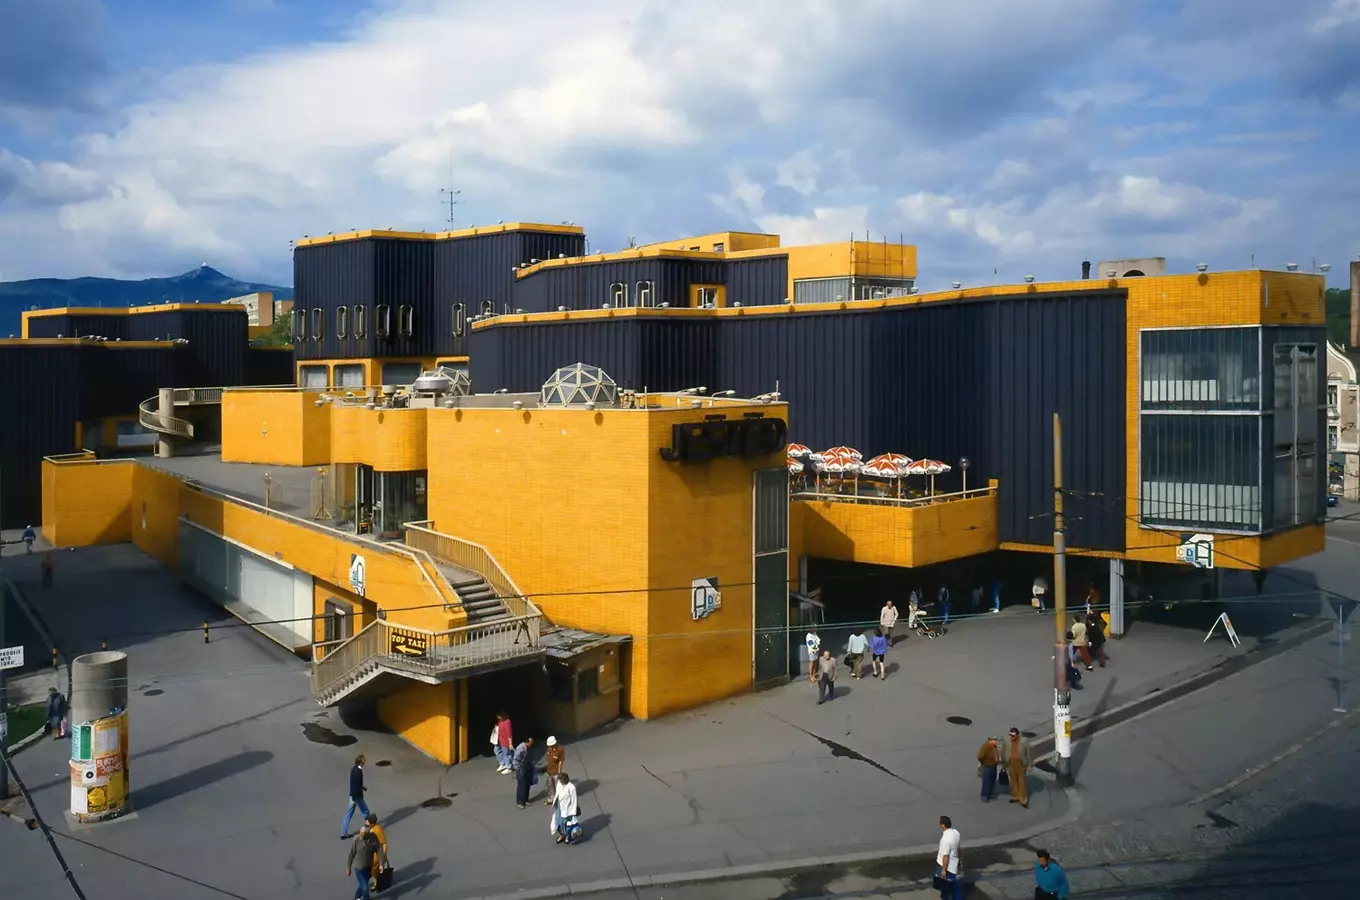 Obchodní středisko Ještěd v Liberci – zaniklá stavba od architekta Karla Hubáčka